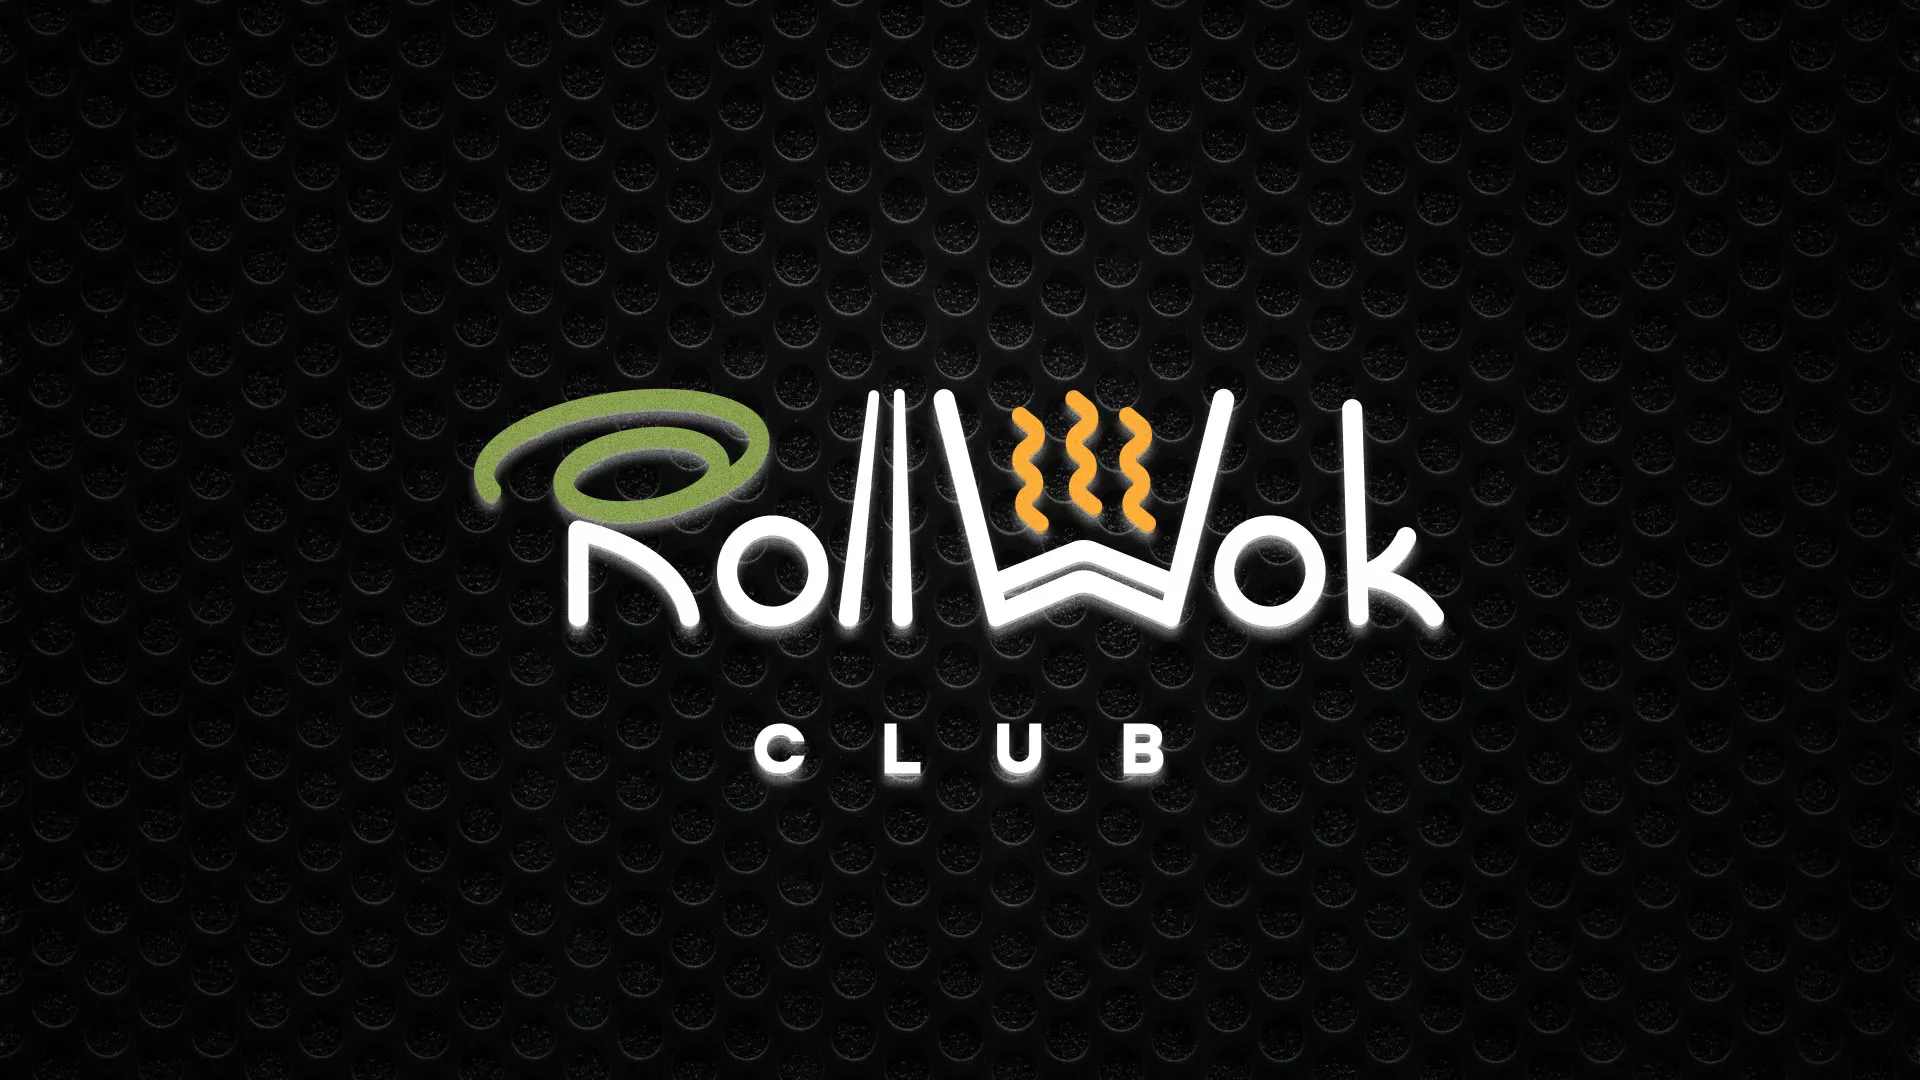 Брендирование торговых точек суши-бара «Roll Wok Club» в Белинском